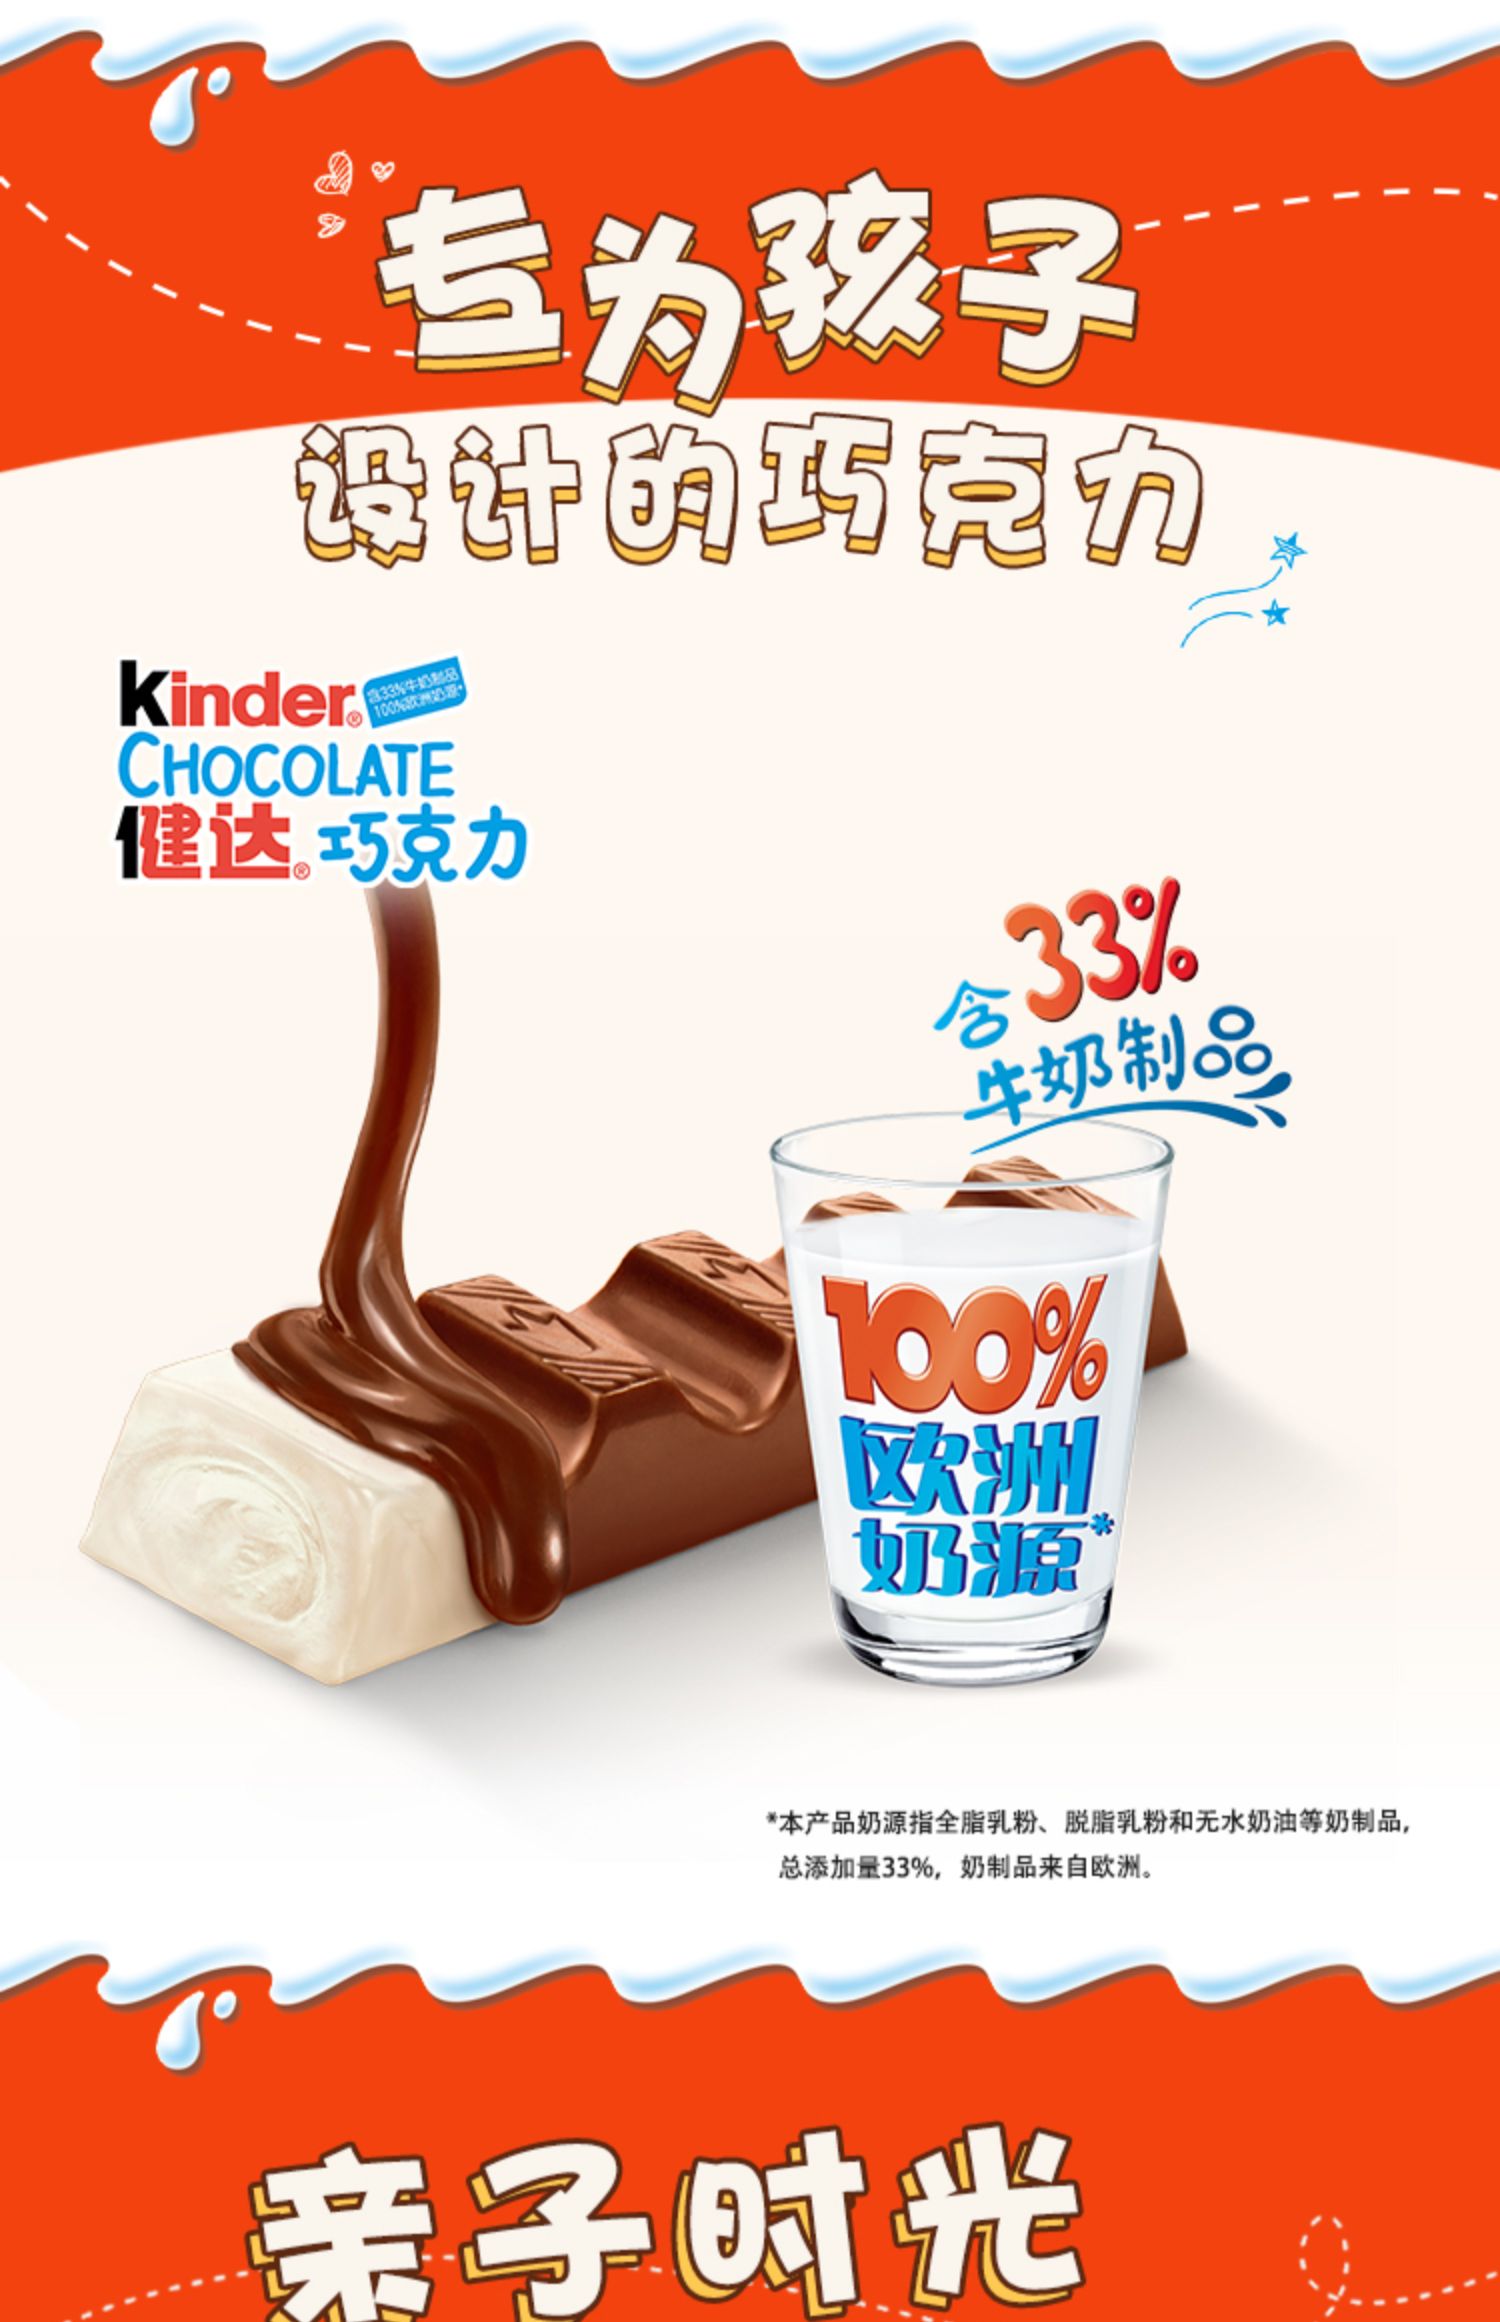 【有赠品】健达牛奶夹心巧克力8条*10盒